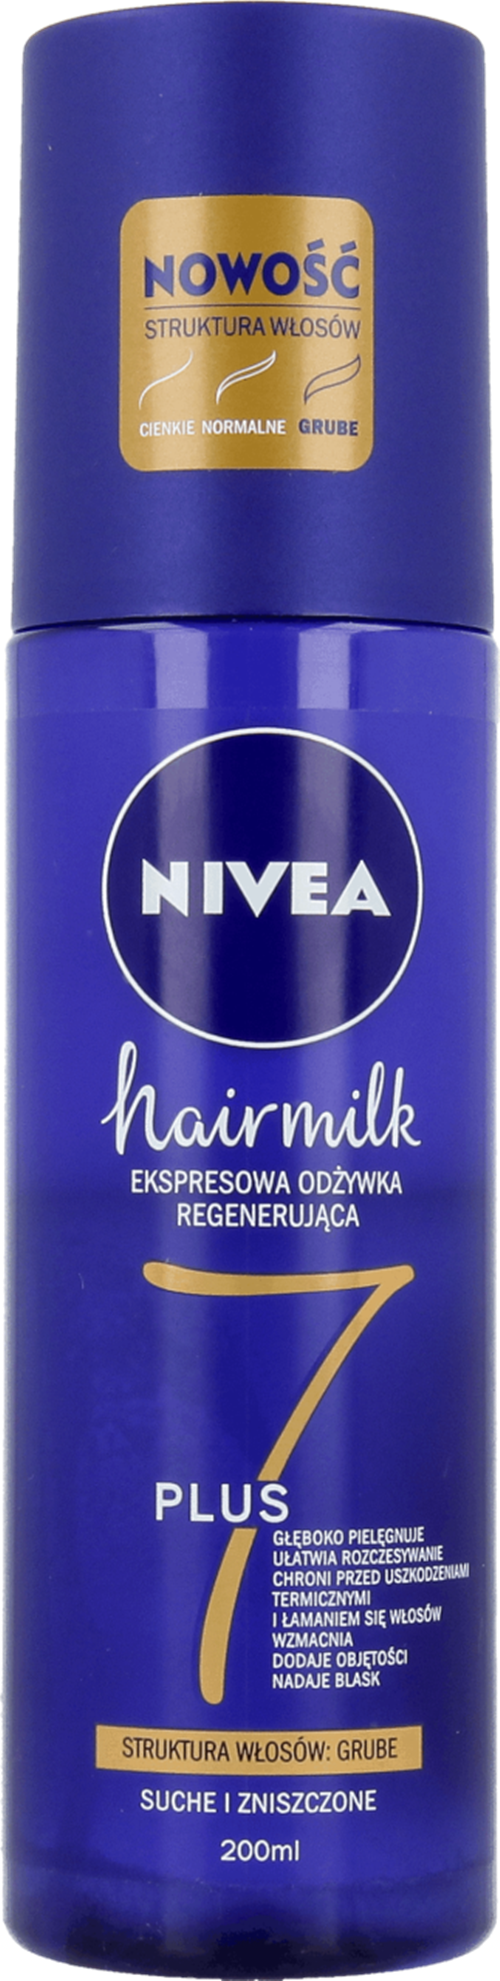 nivea hairmilk ekspresowa regenerująca odżywka do włosów o strukturze cienkiej